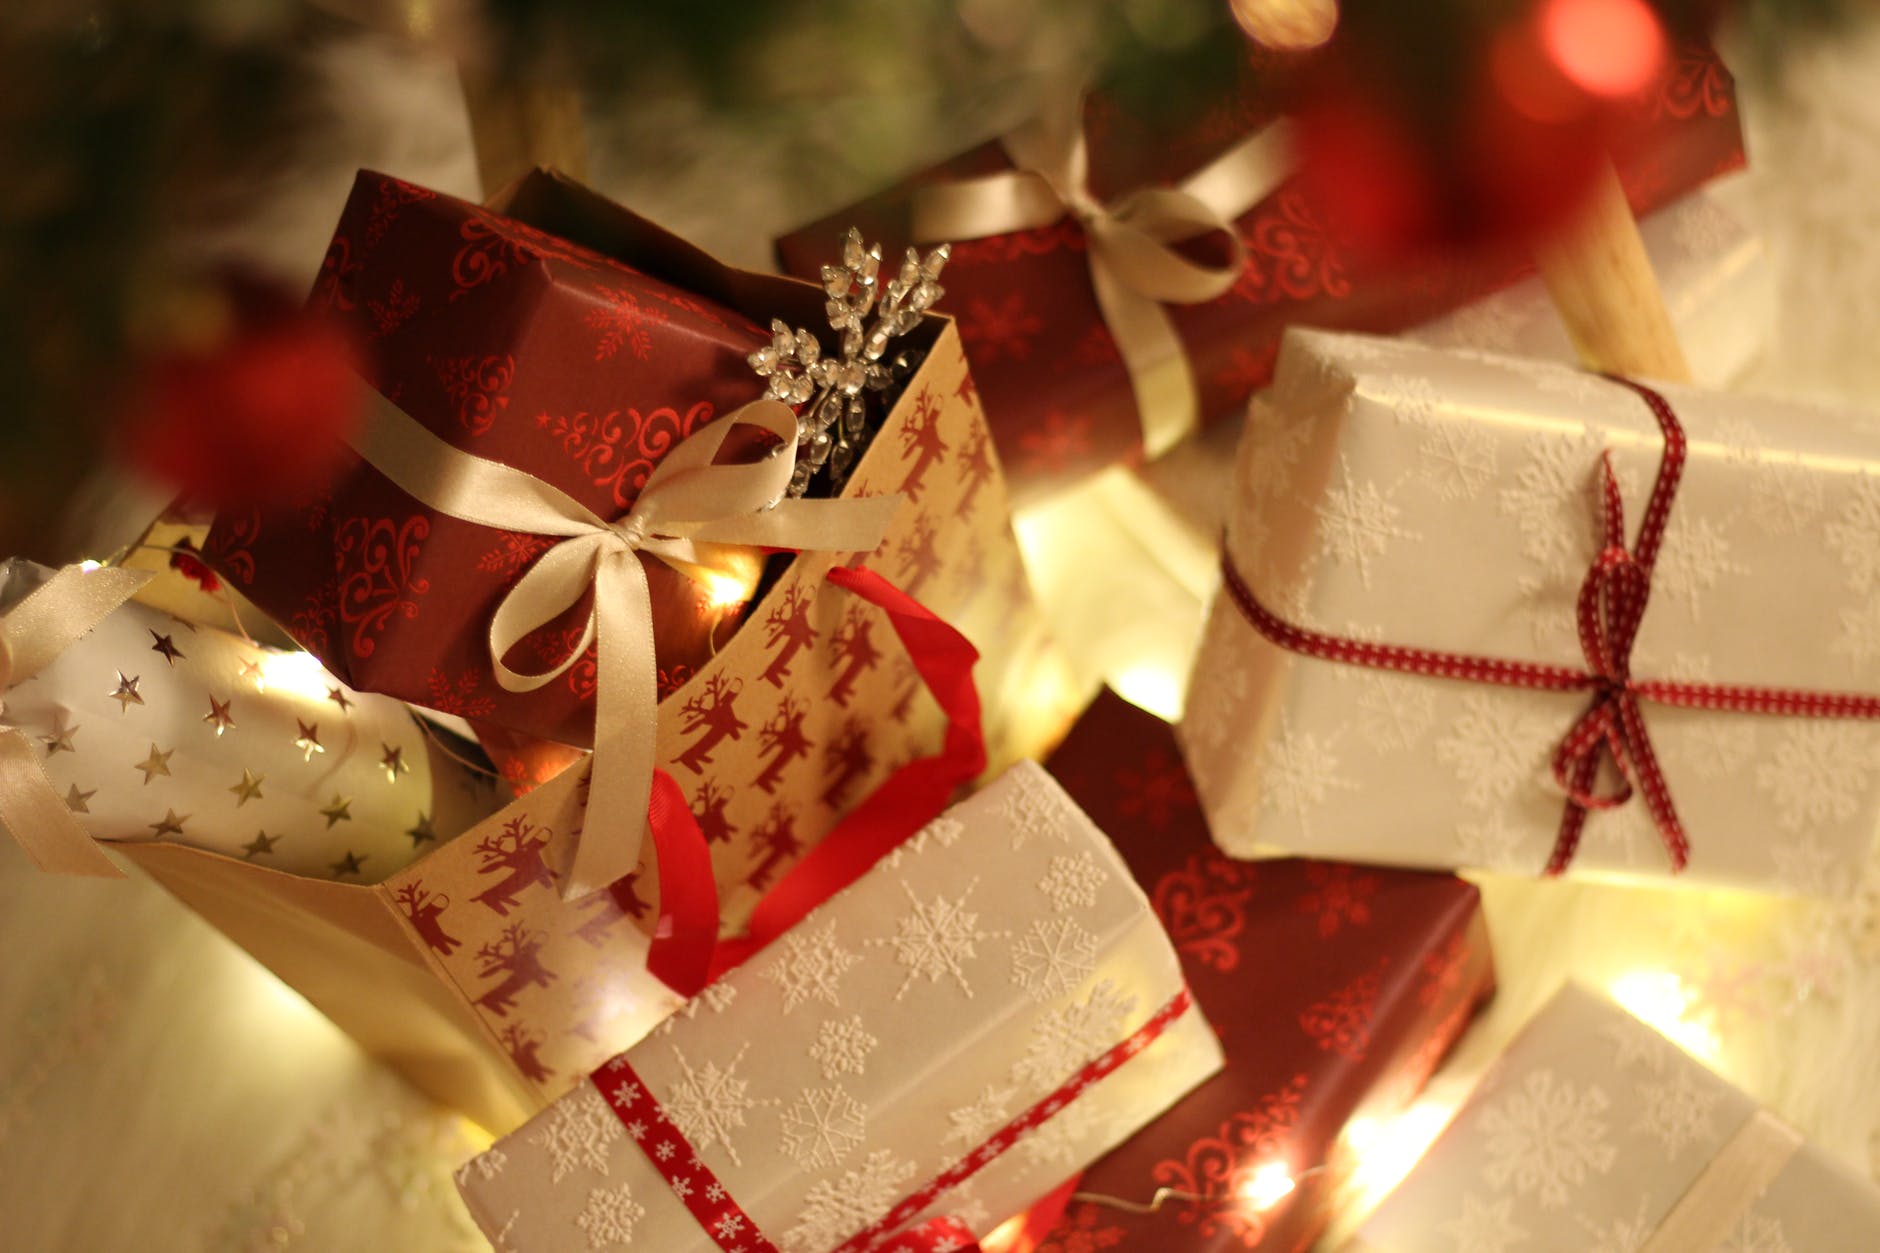 Deze last-minute Kerstcadeau ideeën worden misschien je redding!